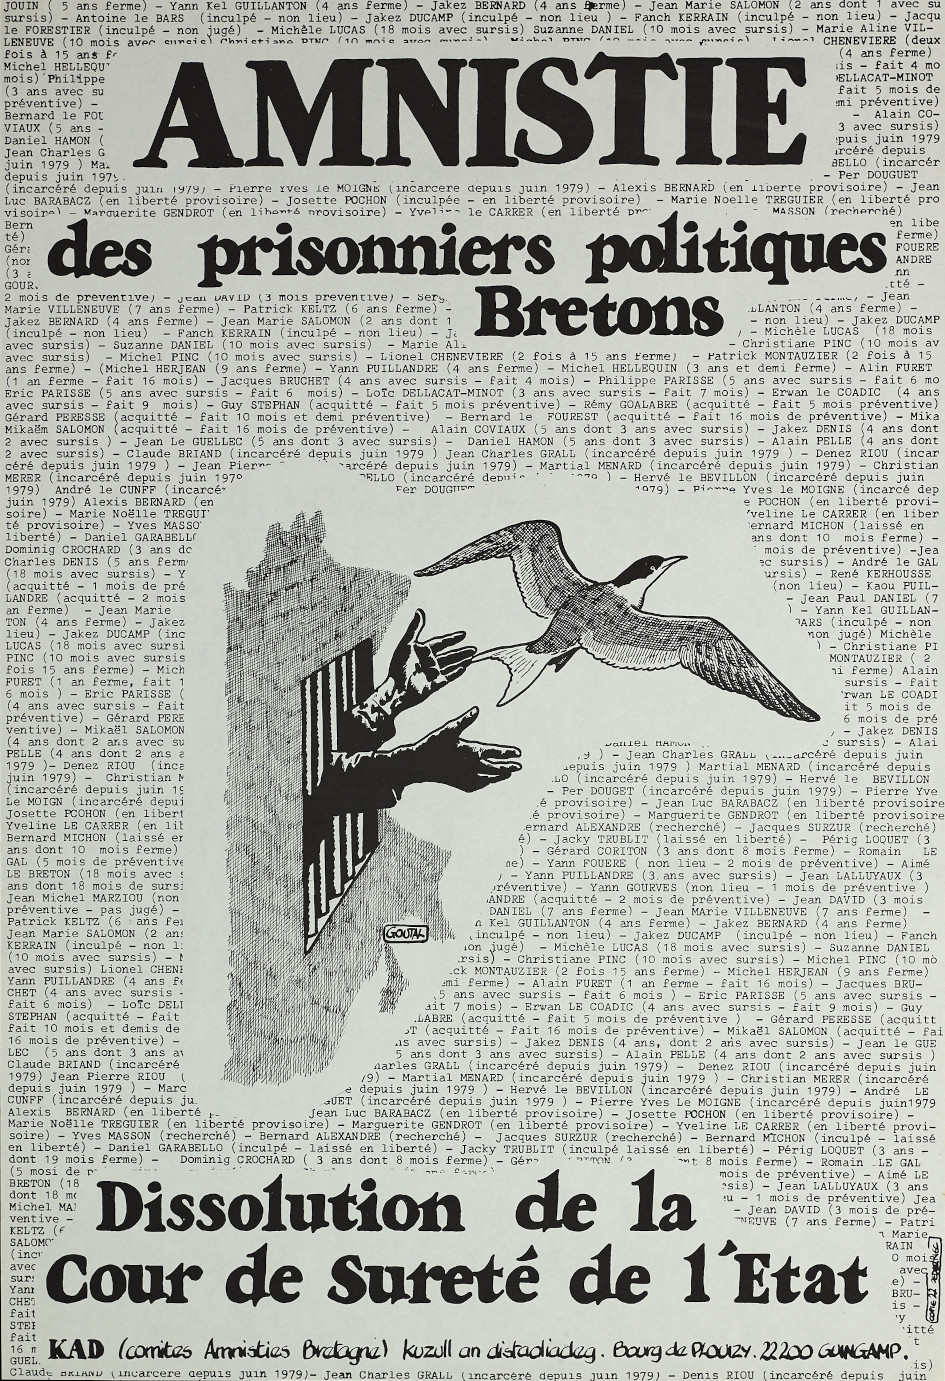 Amnistie des prisonniers politiques bretons, affiche d'Alain Goutal (1980). Collections Musée de Bretagne, Rennes : 2002.0015.59, CC-BY-SA.